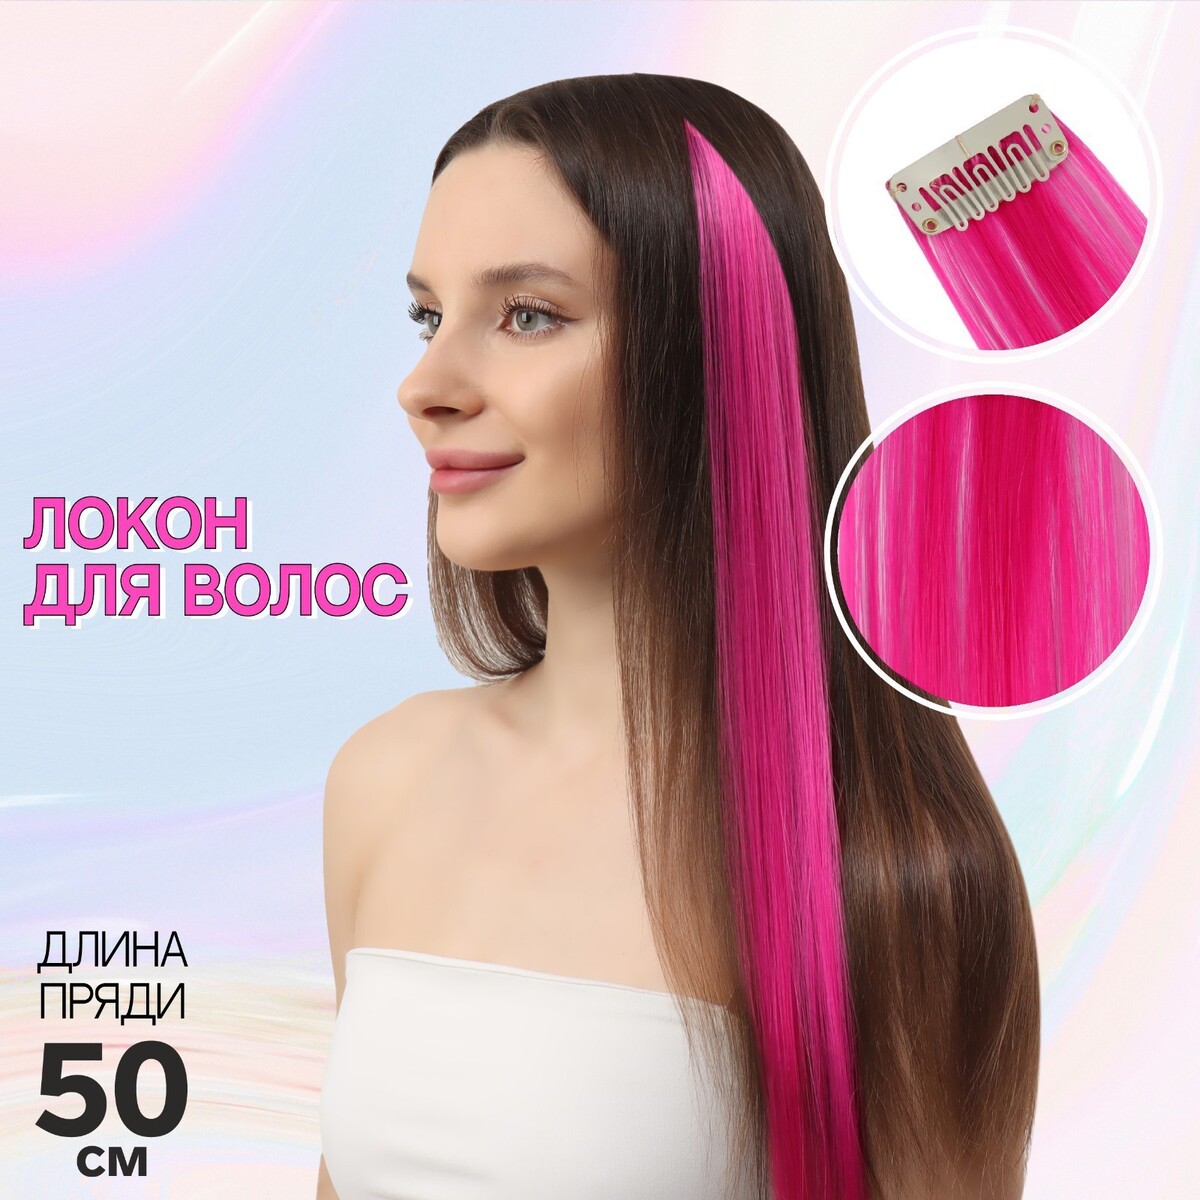 Локон накладной, прямой волос, на заколке, 50 см, 5 гр, цвет розовый локон накладной прямой волос на заколке 50 см 5 гр красный